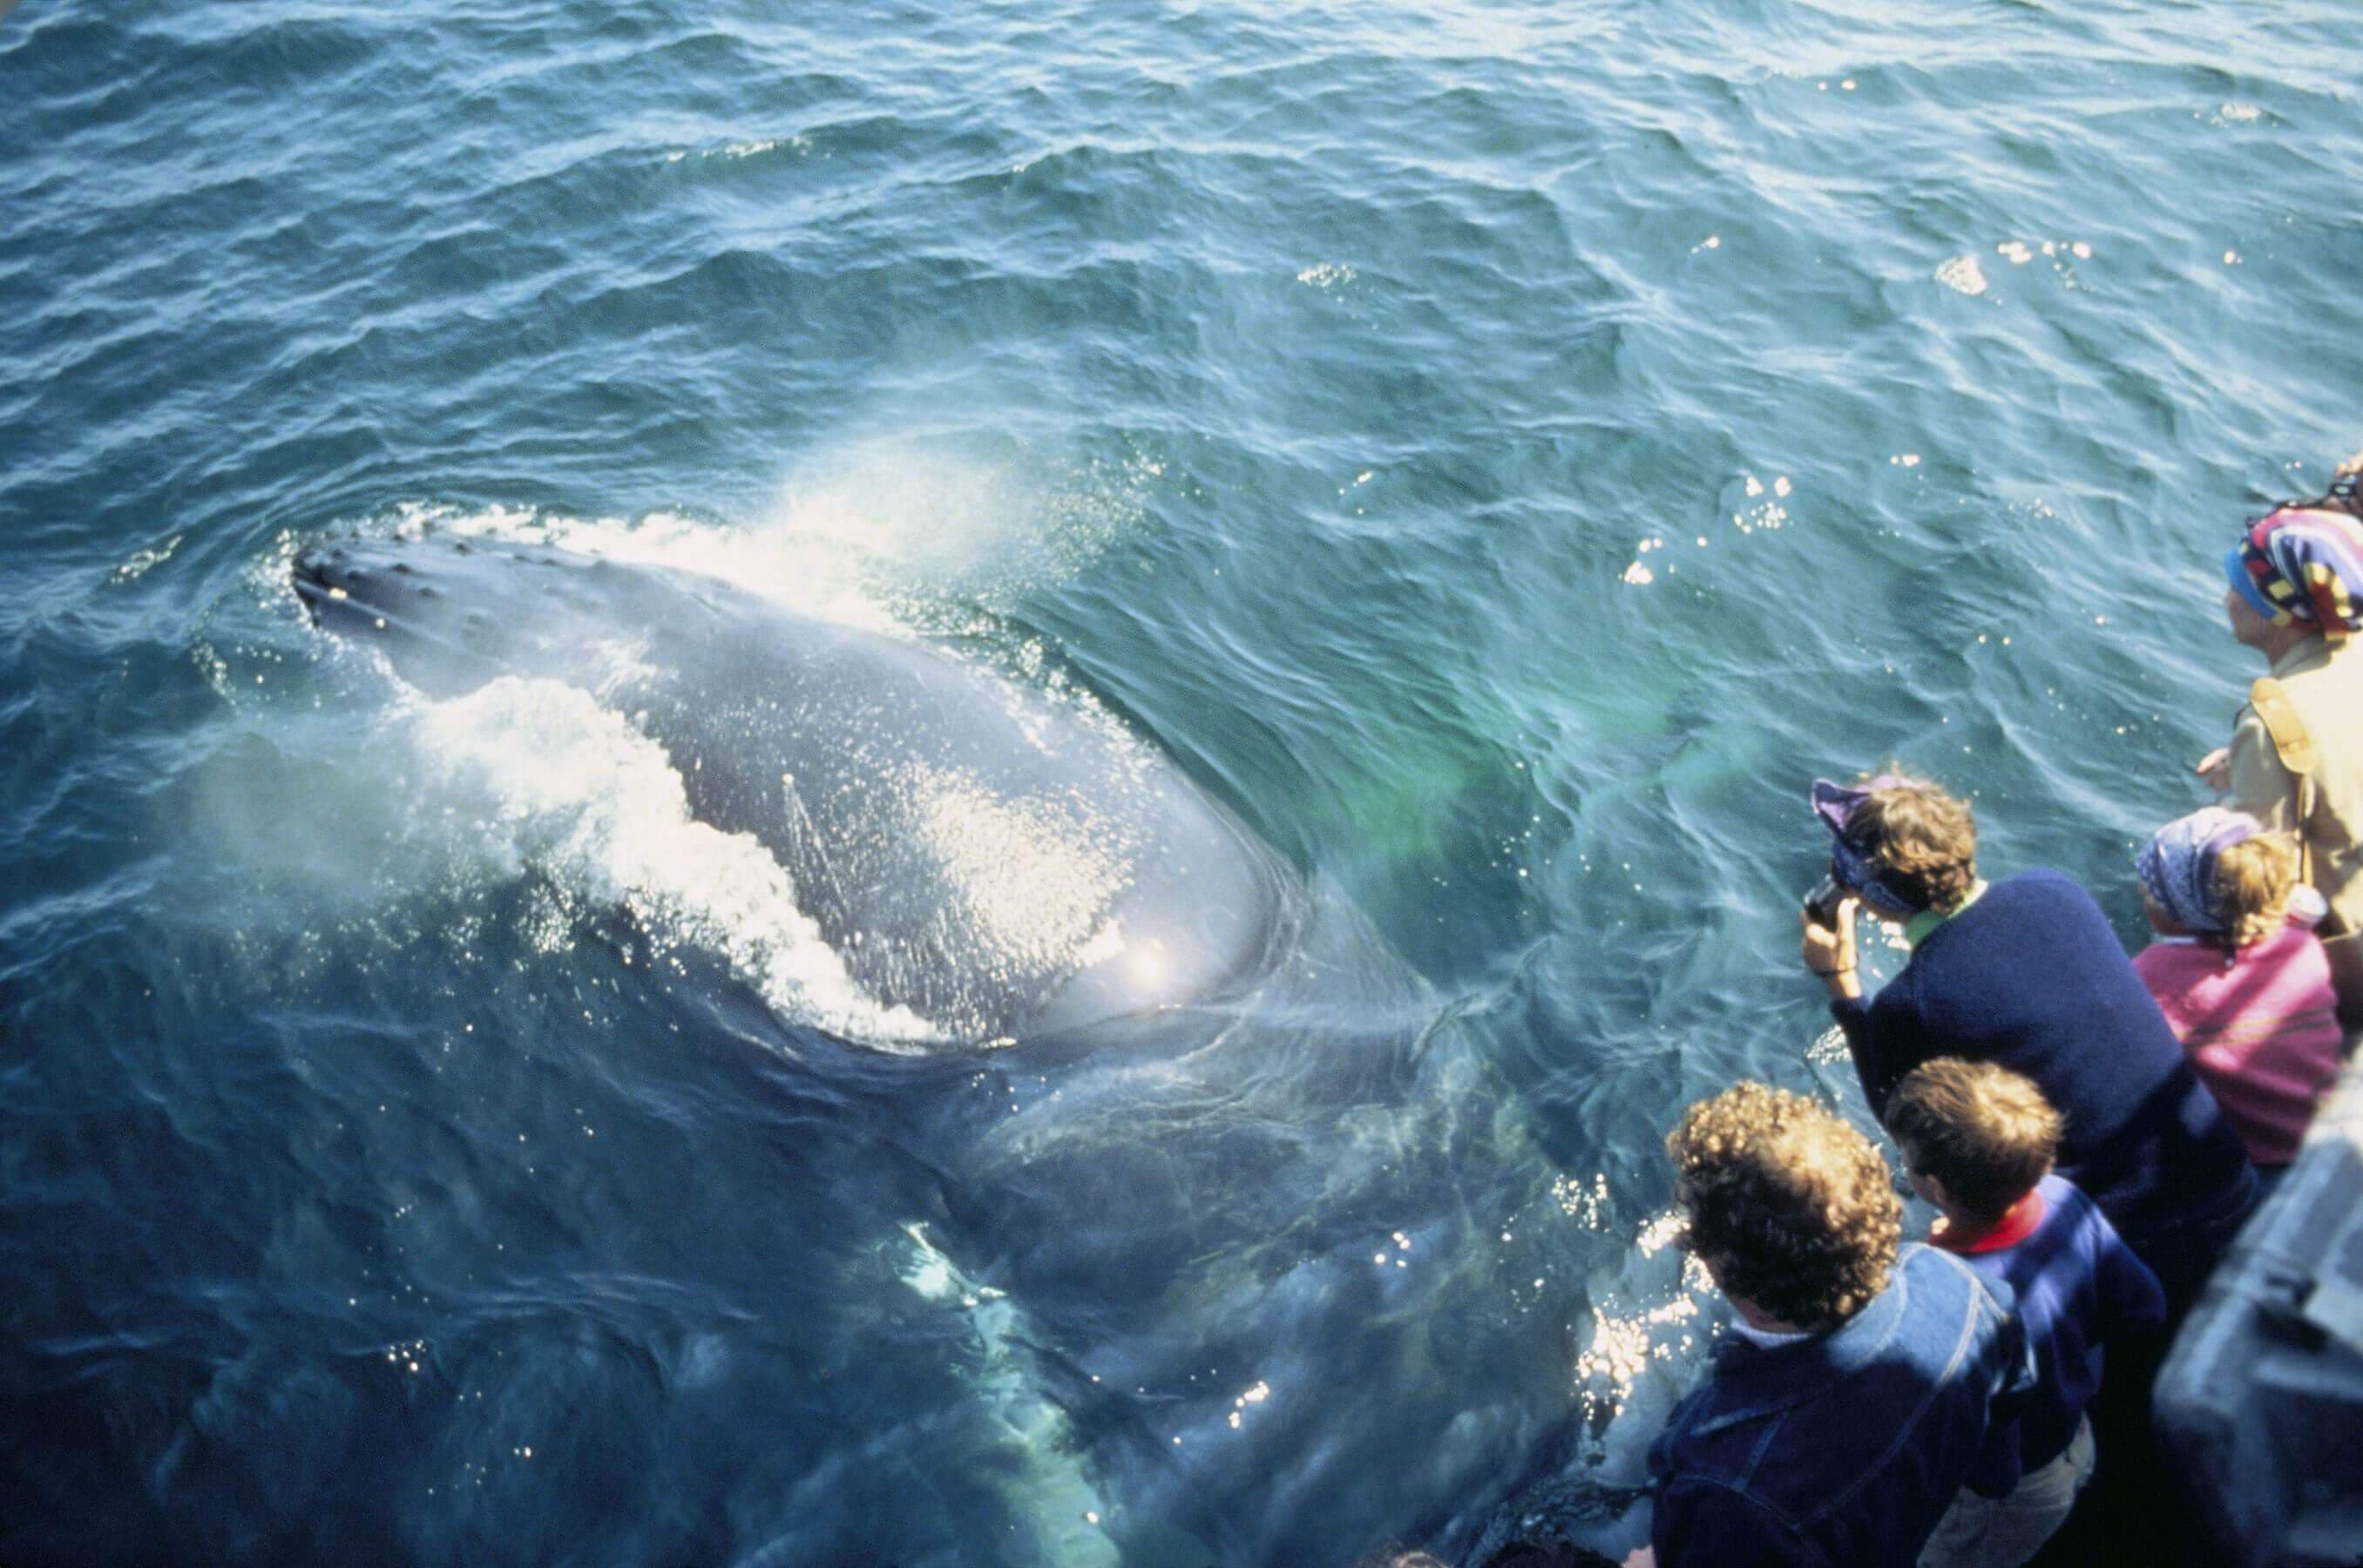 يرى السائحون الحوت الأزرق في جولة مشاهدة الحوت في ترينكومالي سريلانكا